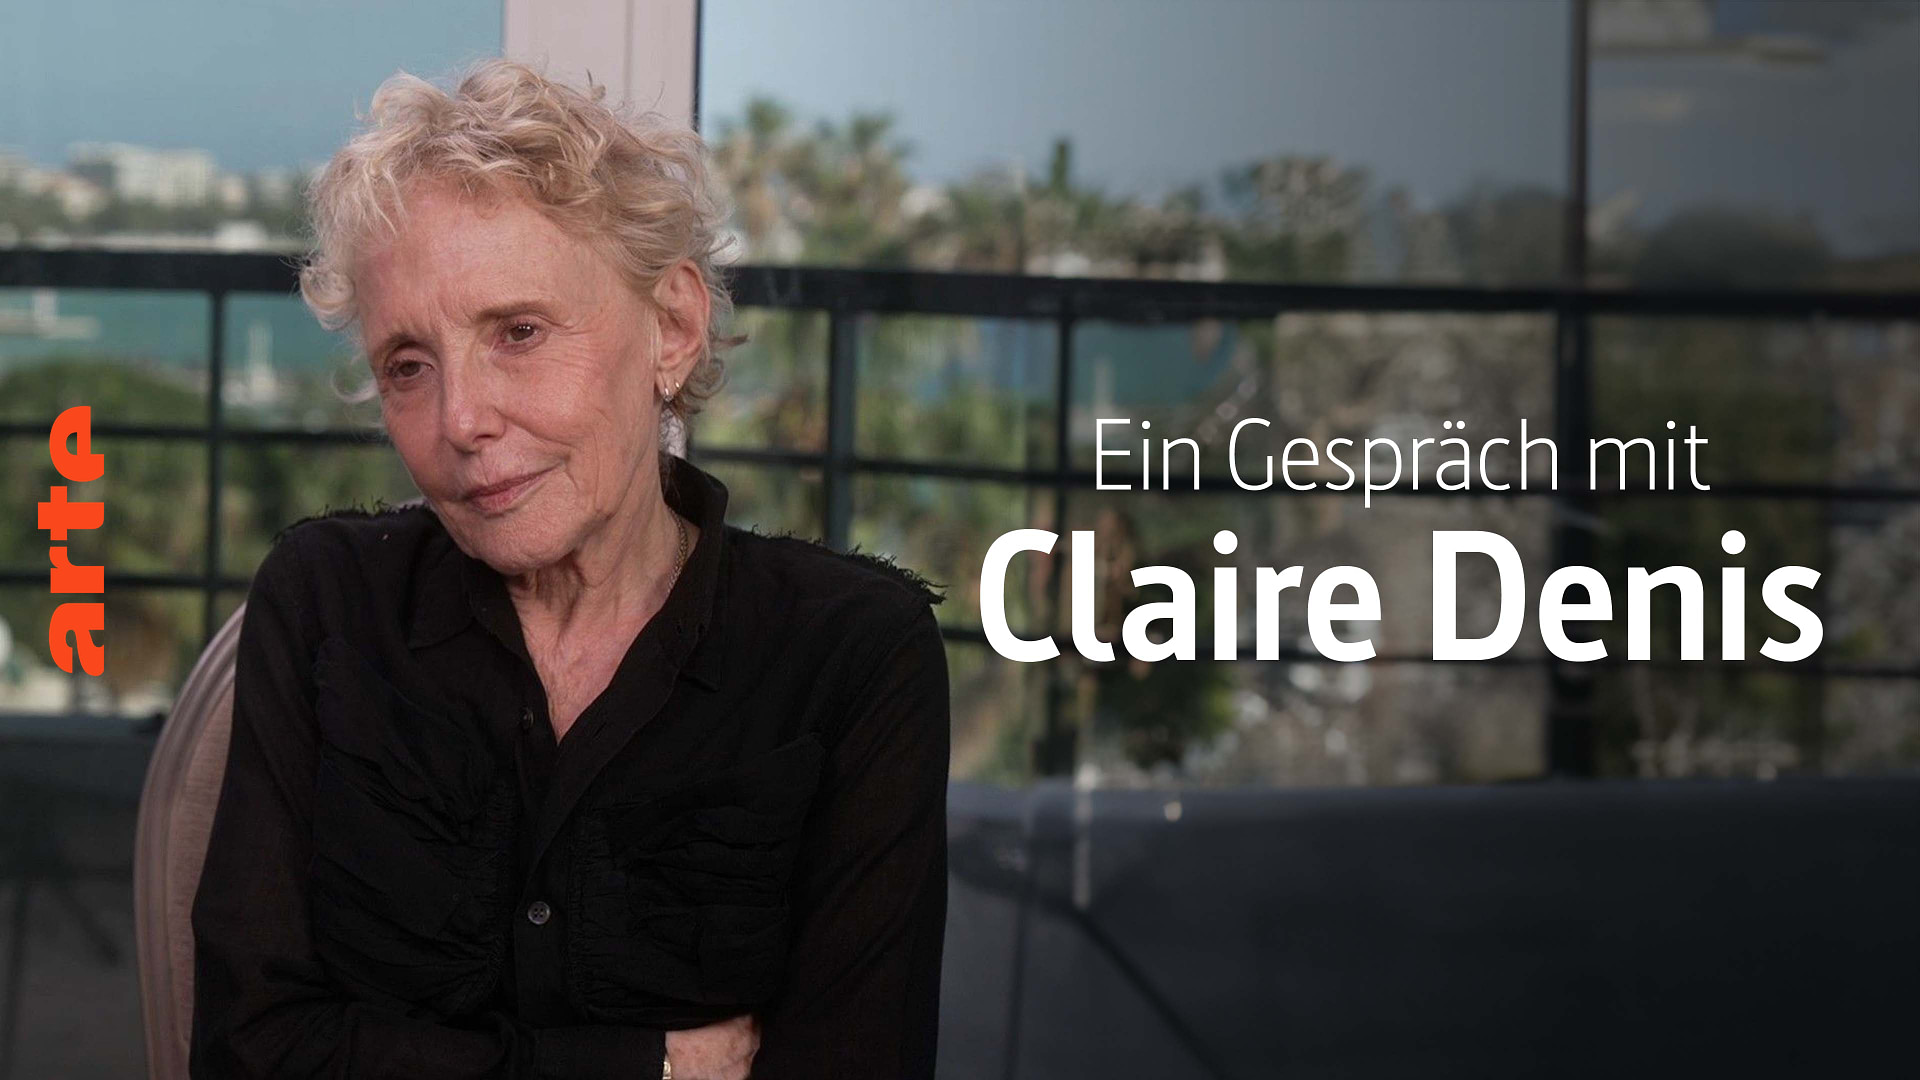 Ein Gespräch mit... Claire Denis